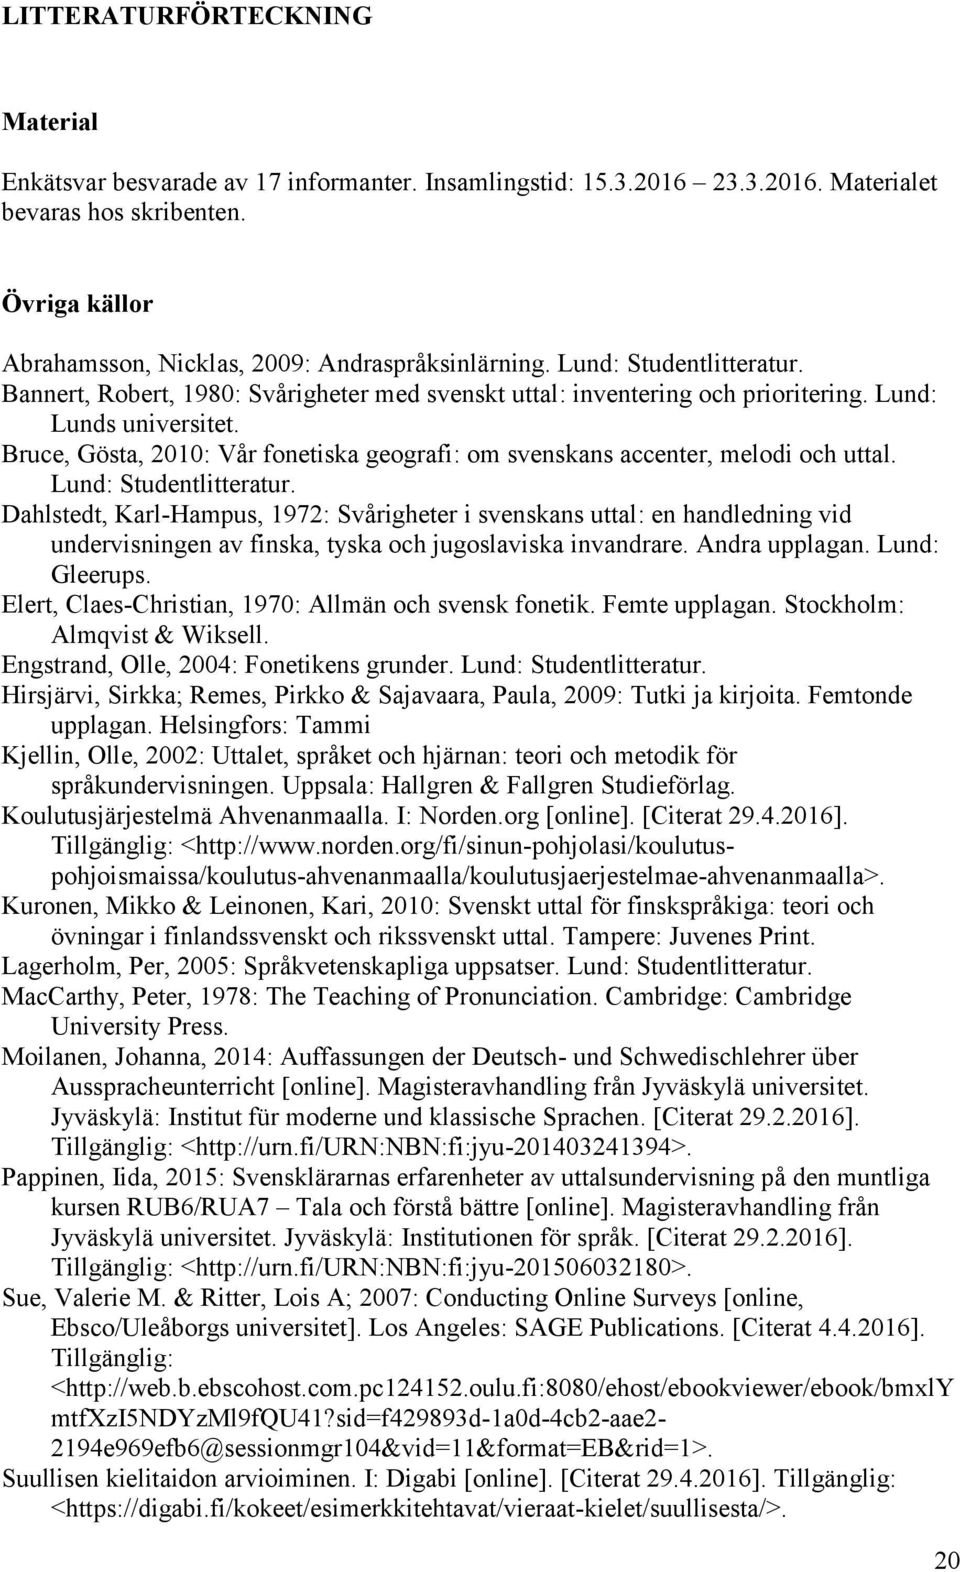 Bruce, Gösta, 2010: Vår fonetiska geografi: om svenskans accenter, melodi och uttal. Lund: Studentlitteratur.